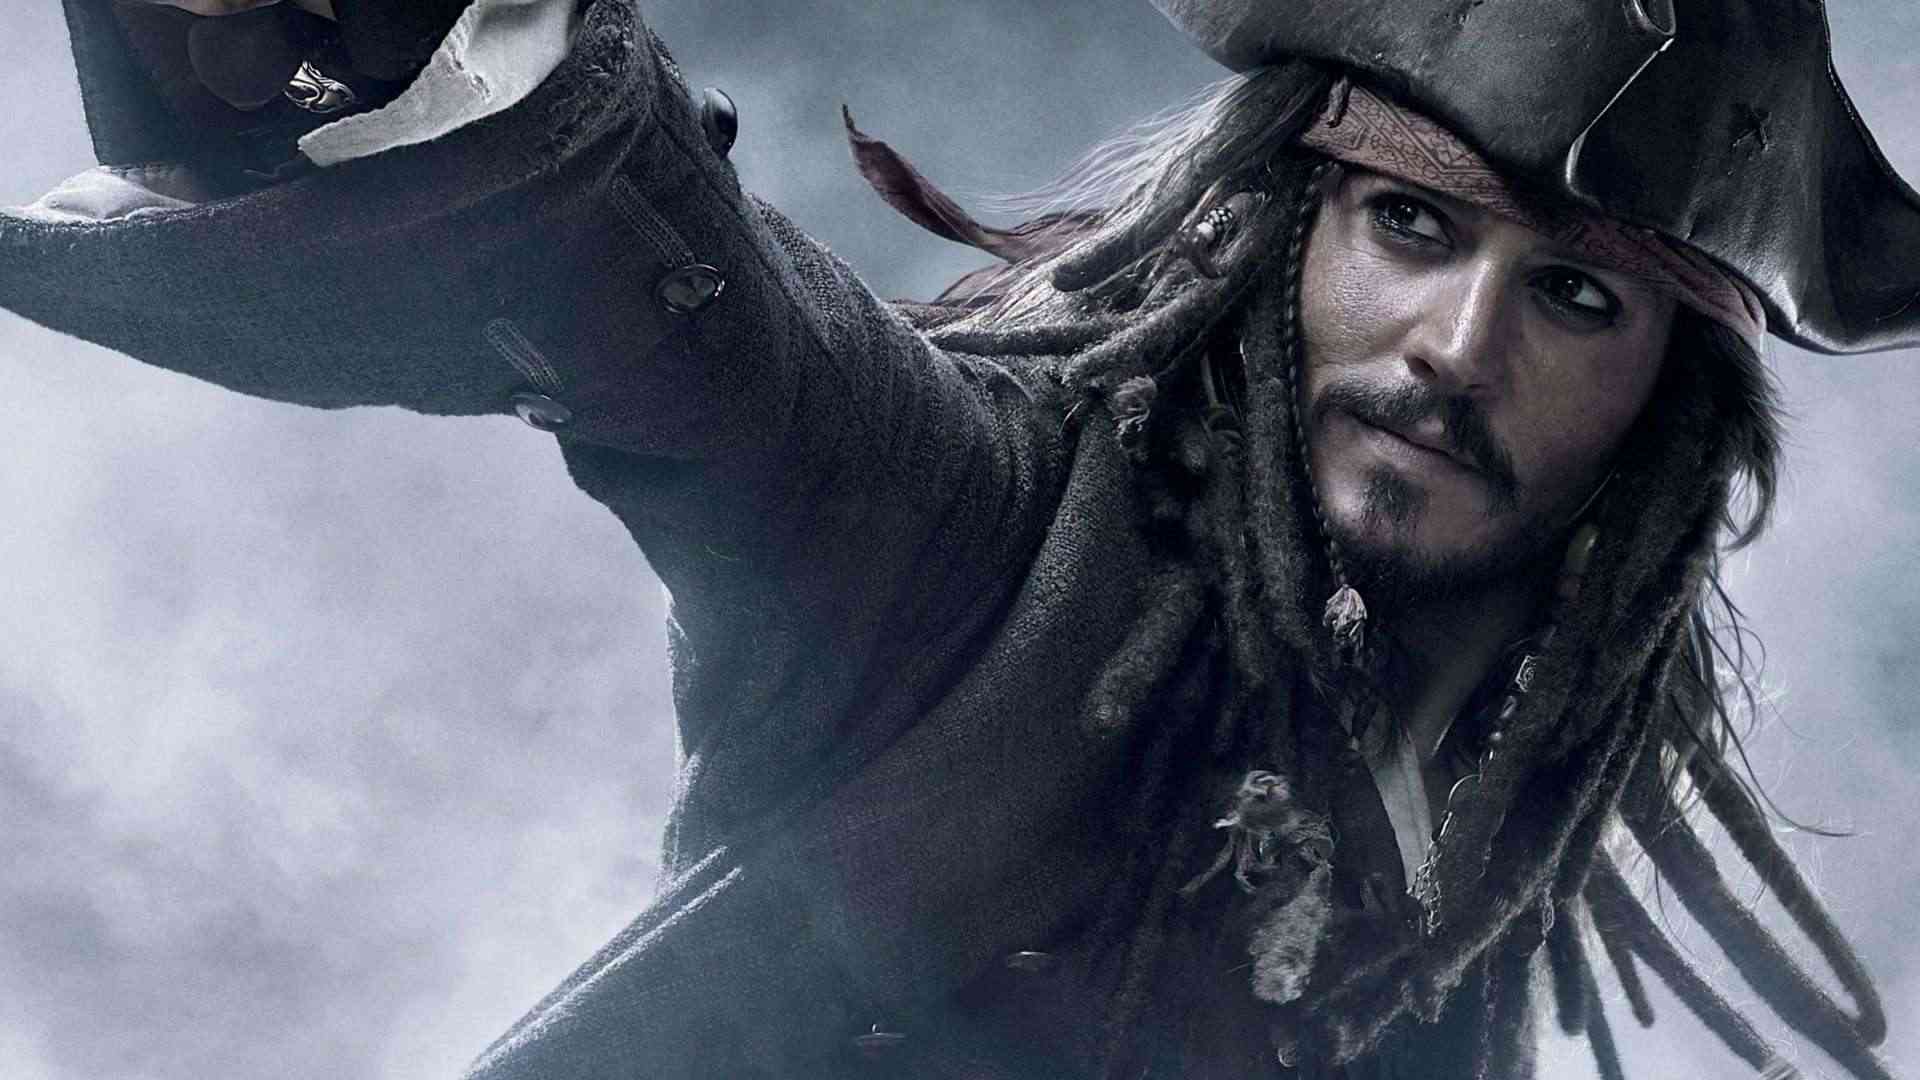 Johnny Depp quay trở lại với thương hiệu Pirates of the Caribbean-1